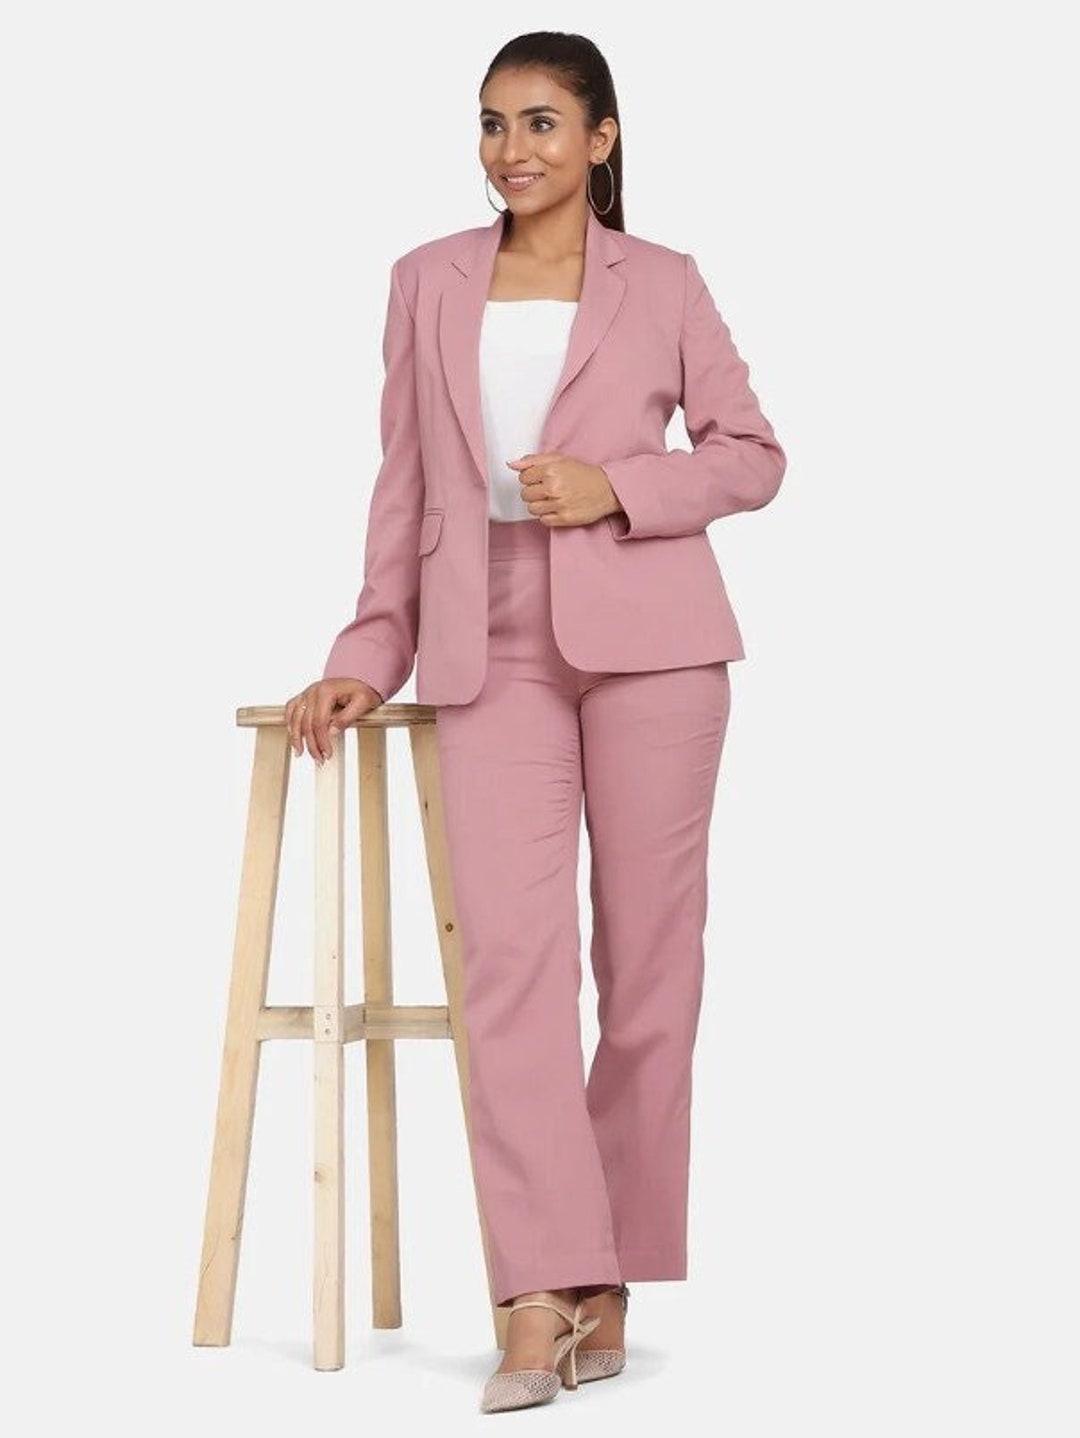 Buy Pink Pantsuit for Women, Dress Pant Suit, 2 Piece Deep V Blazer &  Trouser, Party Suit, Business Pant Suit, Coat, Wedding Pant Suit Online in  India 